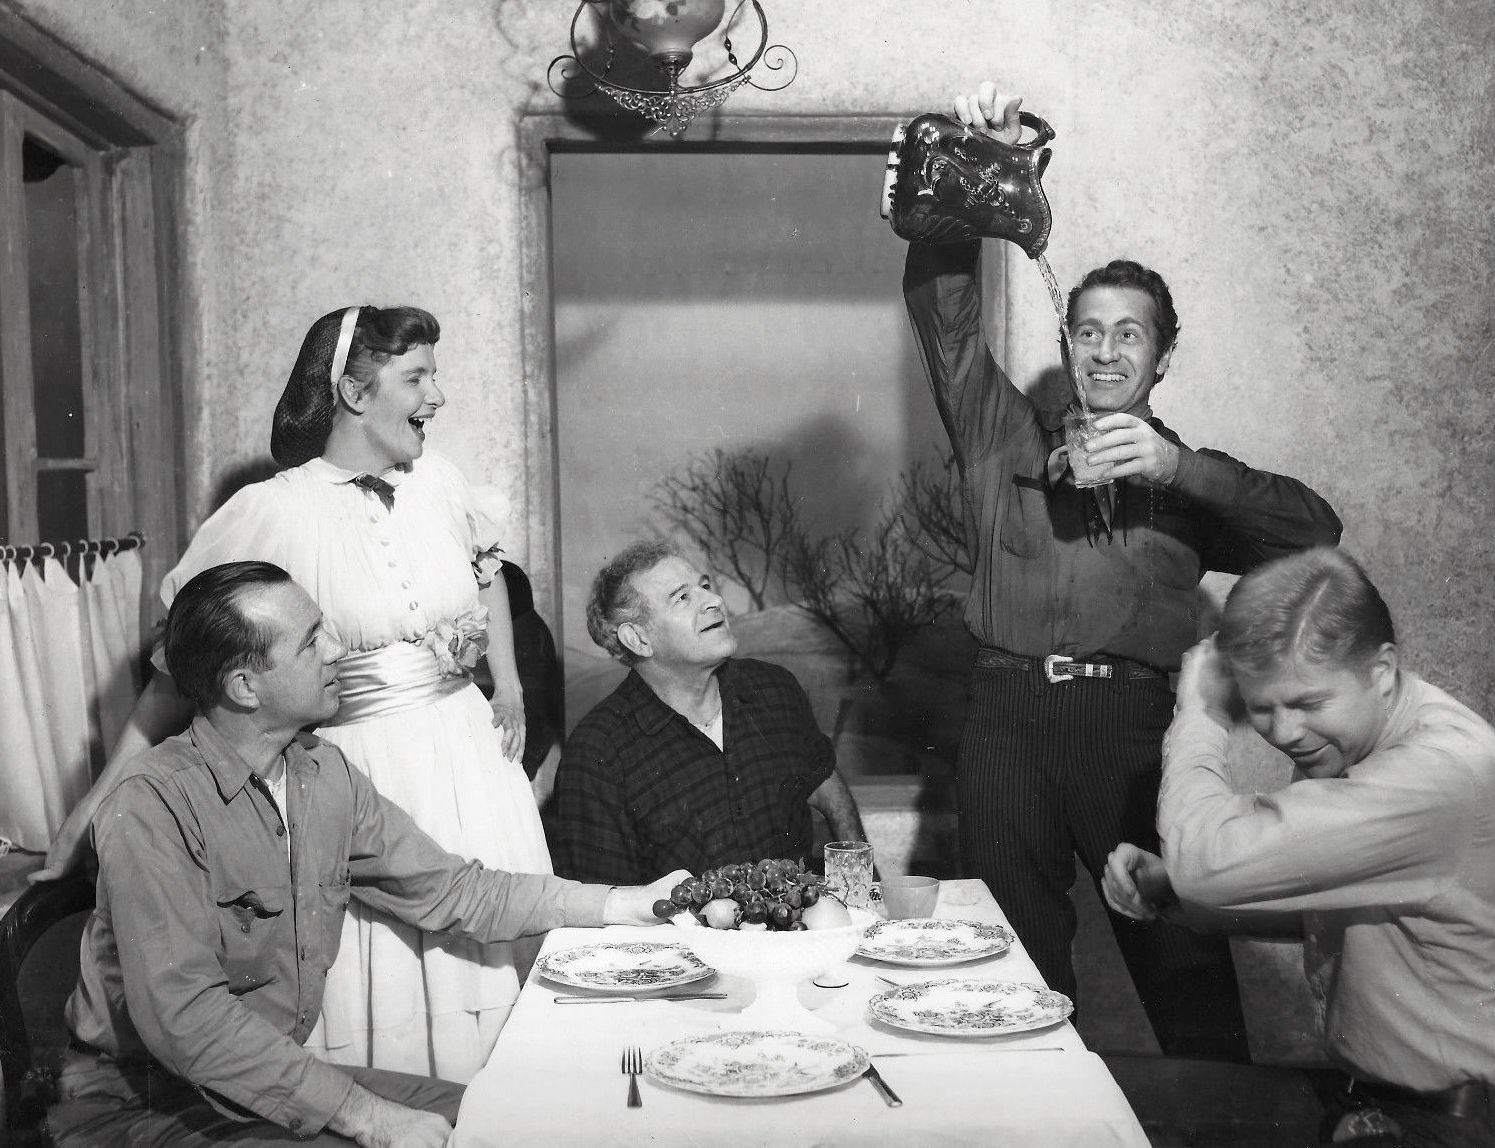 Left to right: Joseph Sullivan, Geraldine Page, Cameron Prud'homme, Darren McGavin, and Albert Salmi in the Broadway production of "The Rainmaker," circa 1950s. | Photo: Alfredo Valente / Public domain